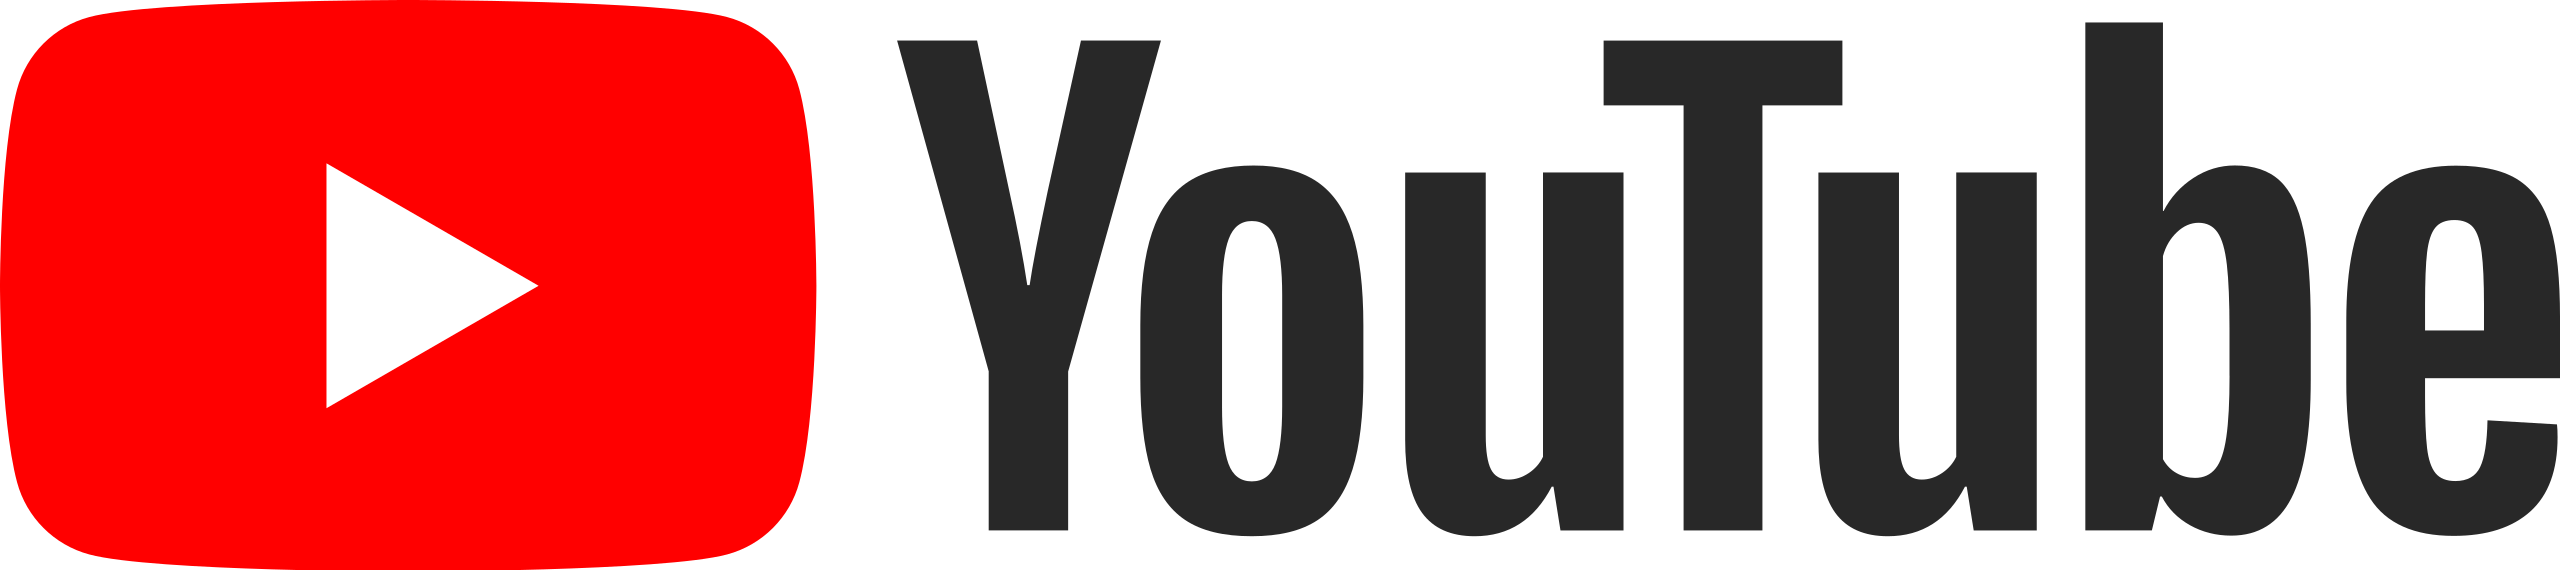 YouTube_Logo_Ads